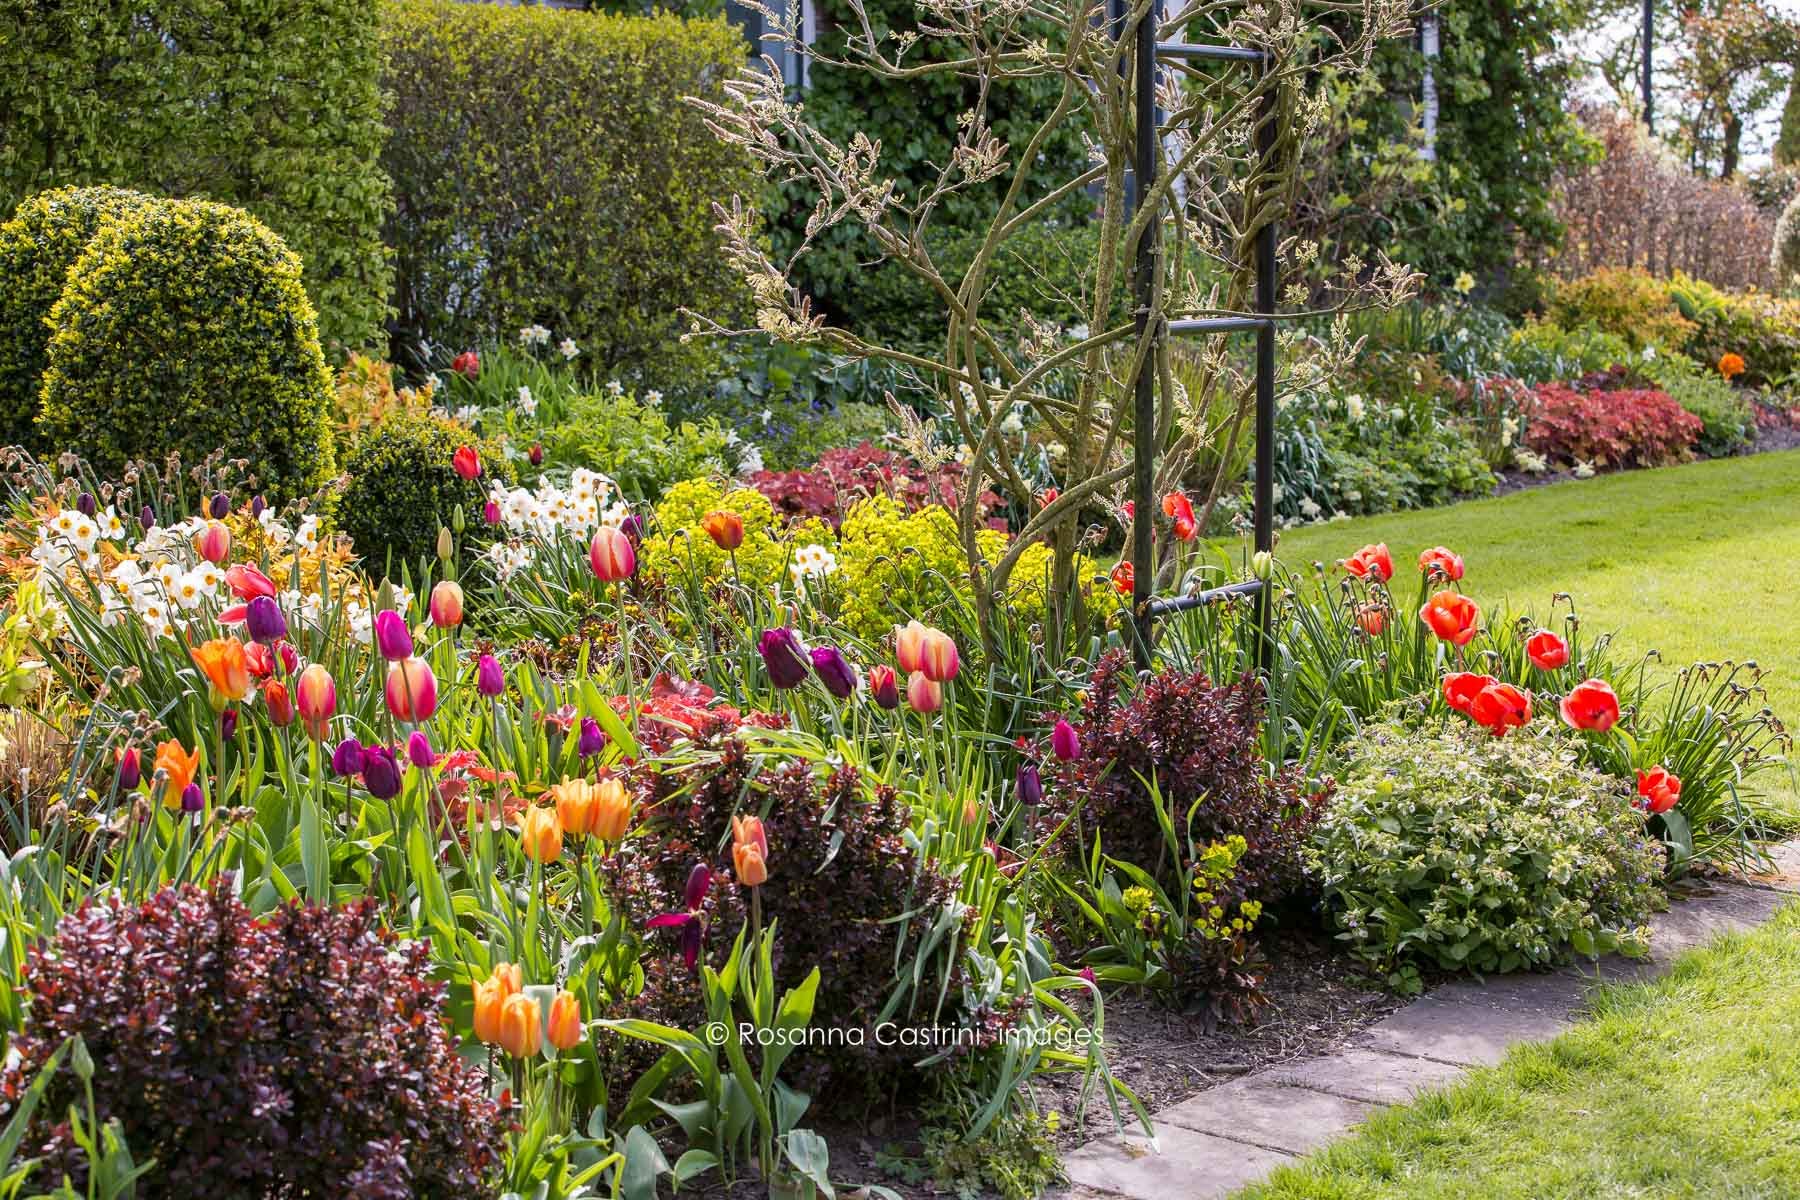 Scena primaverile in giardino con tulipani, piccoli arbusti porpora e sfere di bosso